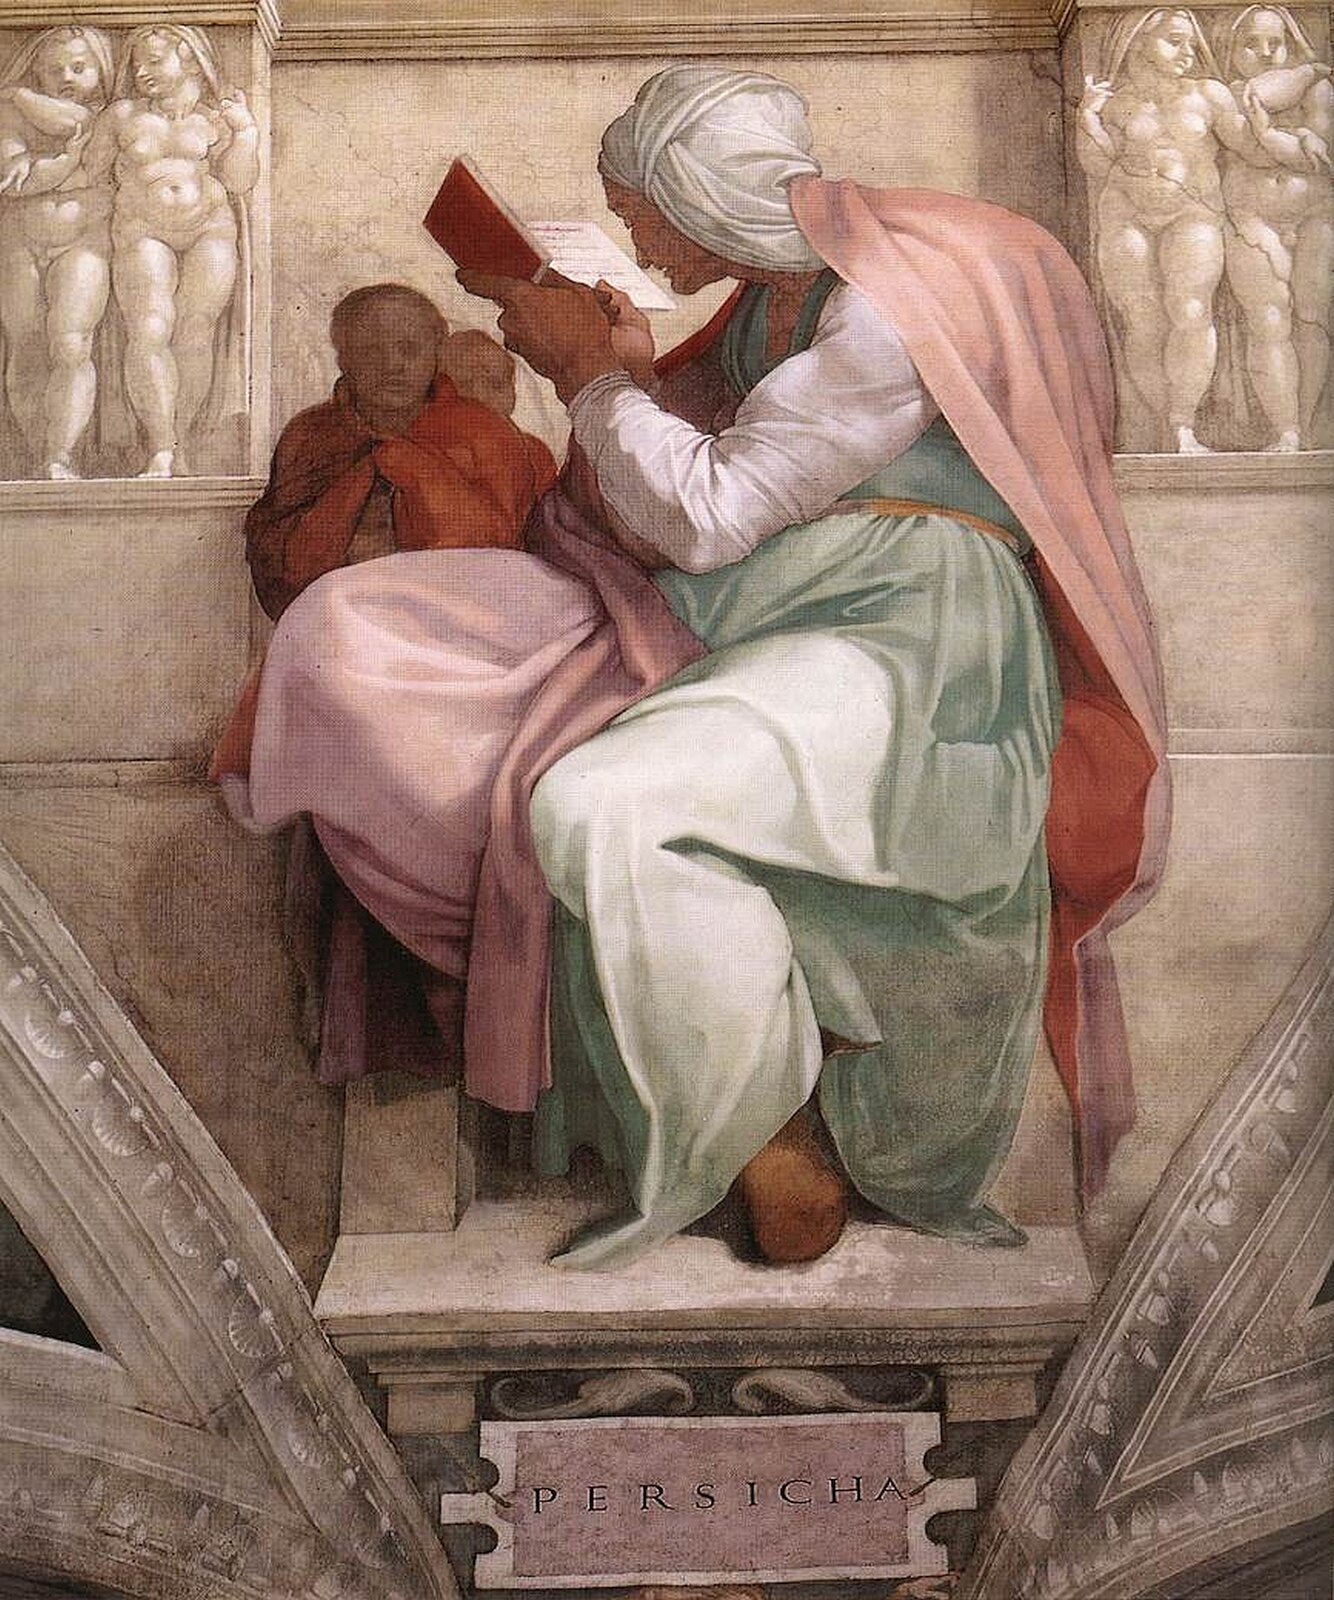 lustracja przedstawia fresk Michała Anioła Buonarottiego pt. „Sybilla Perska”. Na fresku przedstawiona została kobieta siedząca bokiem na tronie. Kobieta ubrana jest w zielono-różową szatę, a na głowie ma biały zwój ukrywający włosy. Kobieta jest pochłonięta czytaniem. Za nią, w czerwonej szacie znajduje się postać, zza ramienia której widoczna jest głowa następnej postaci.